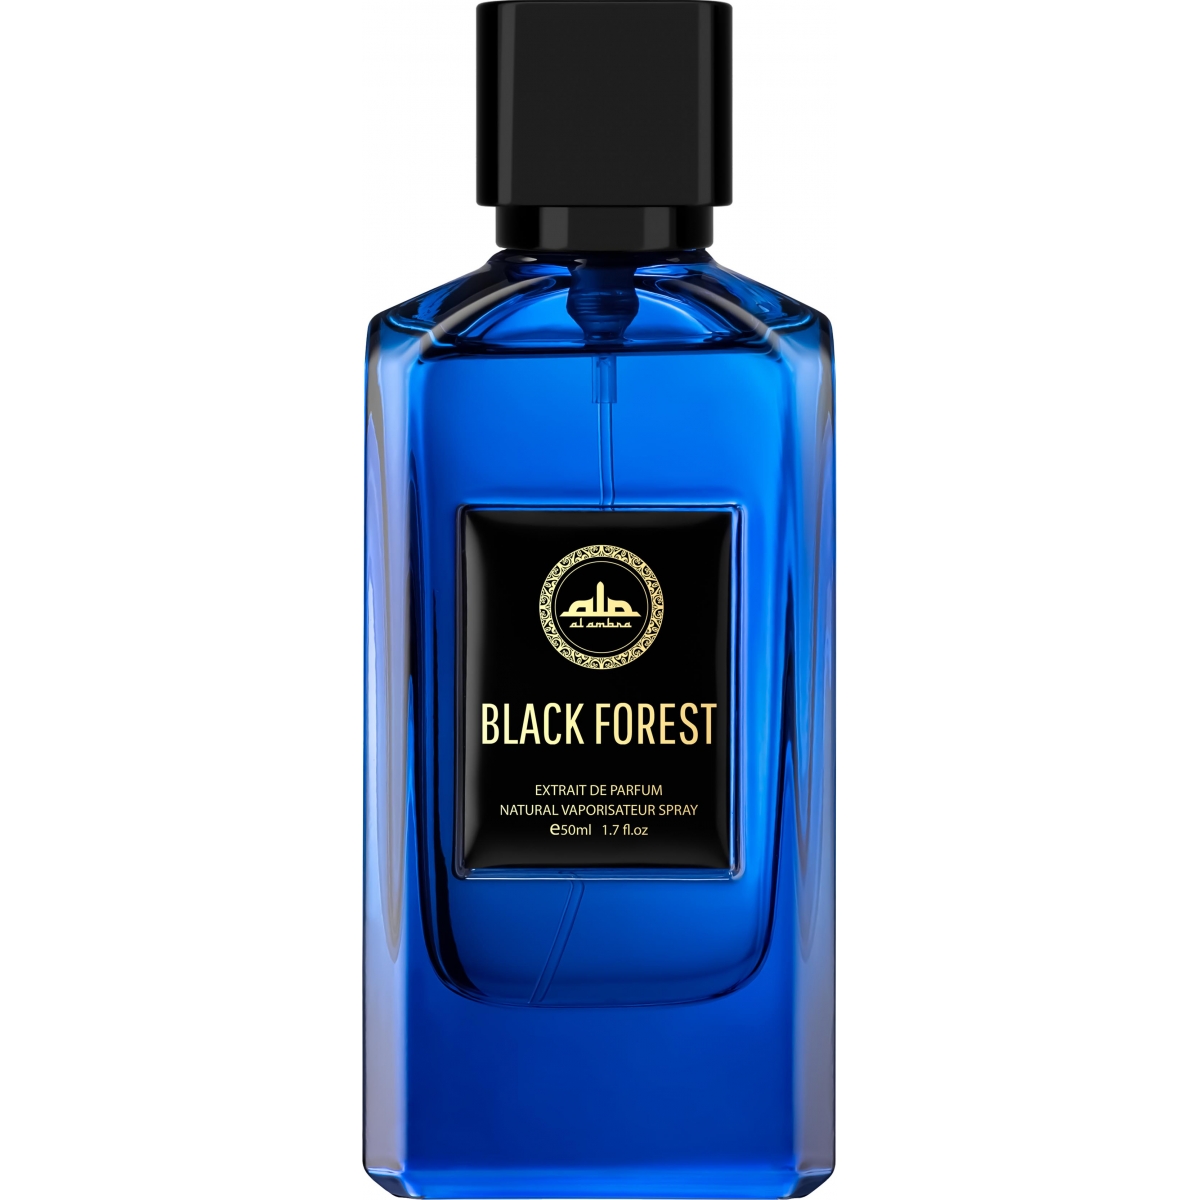 Black Forest Al Ambra Perfumes Perfumes, Unisex Perfumes, Arada Perfumes